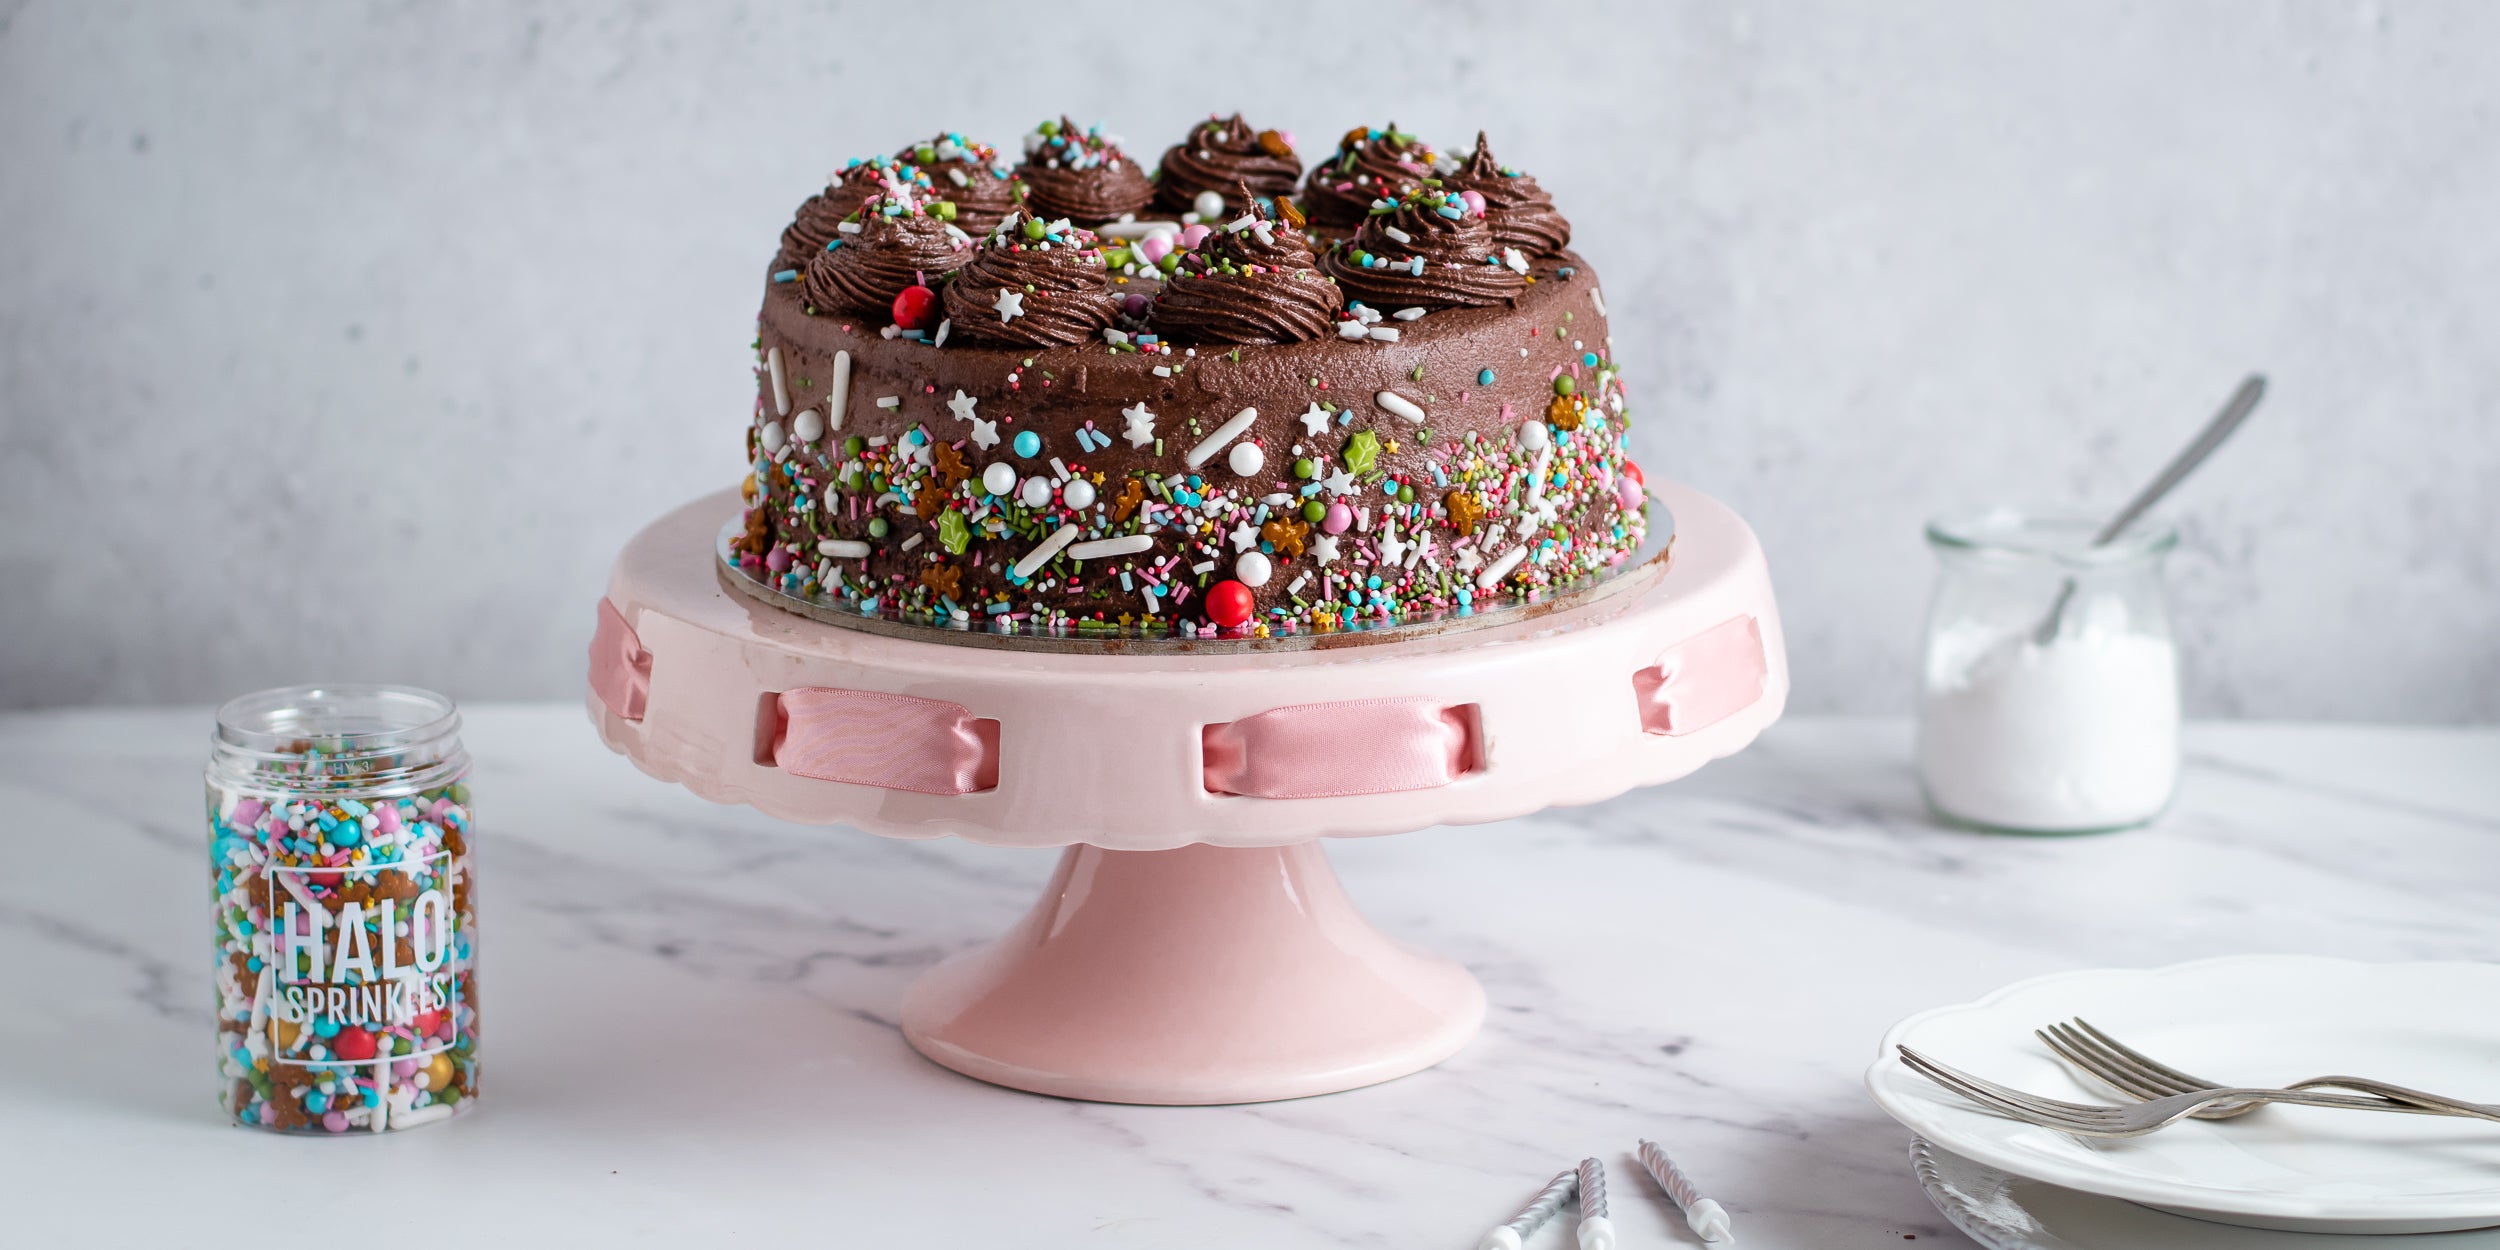 Simple Chocolate Birthday Cake